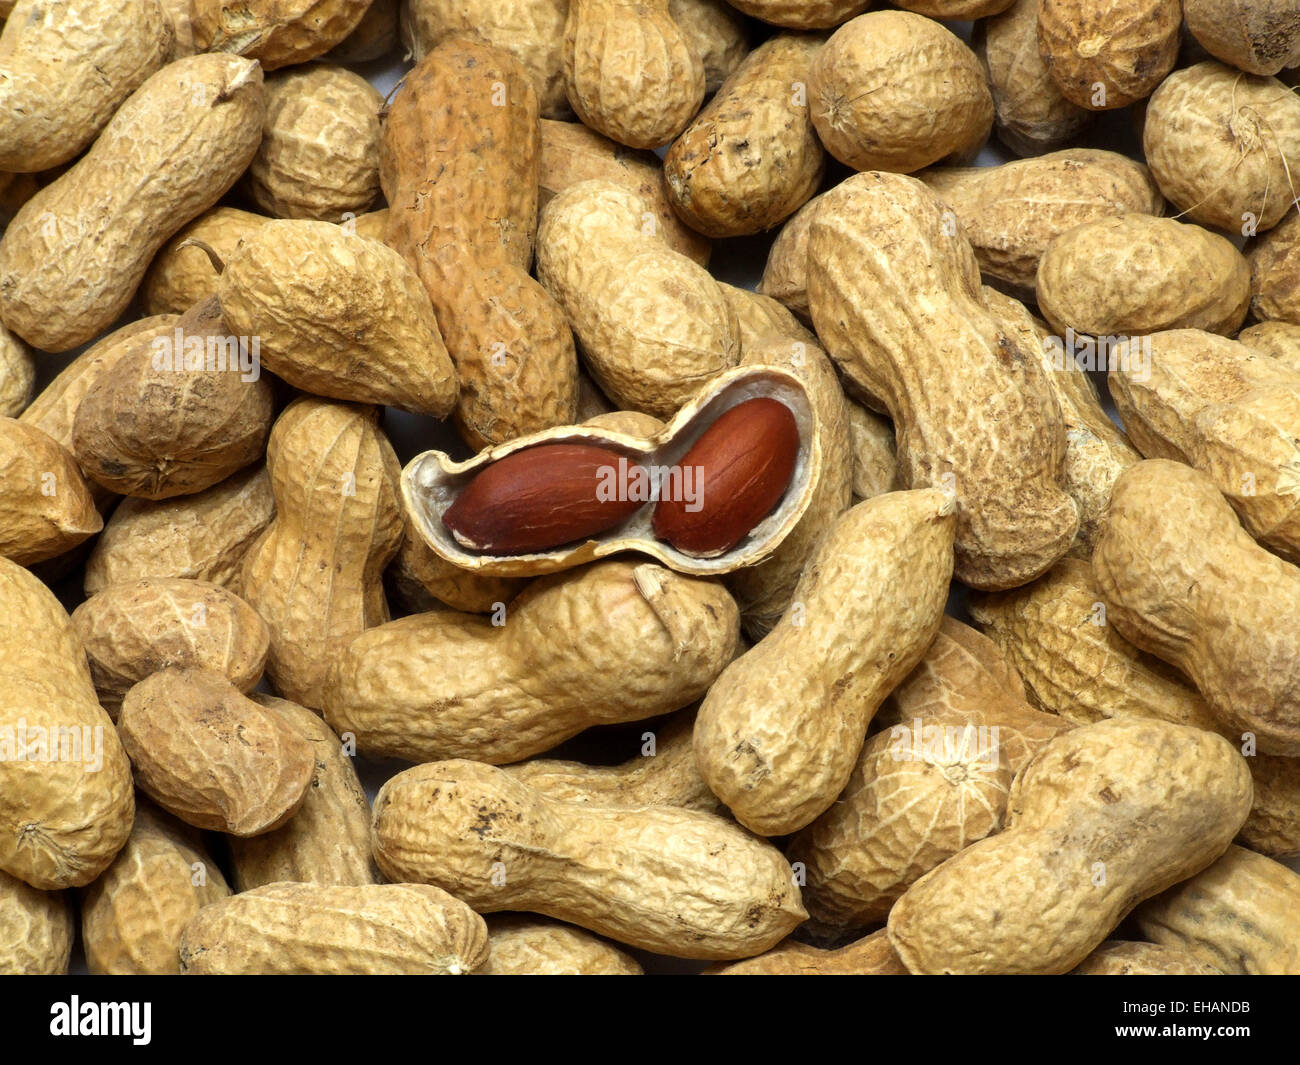 Erdnüsse / peanuts Stock Photo